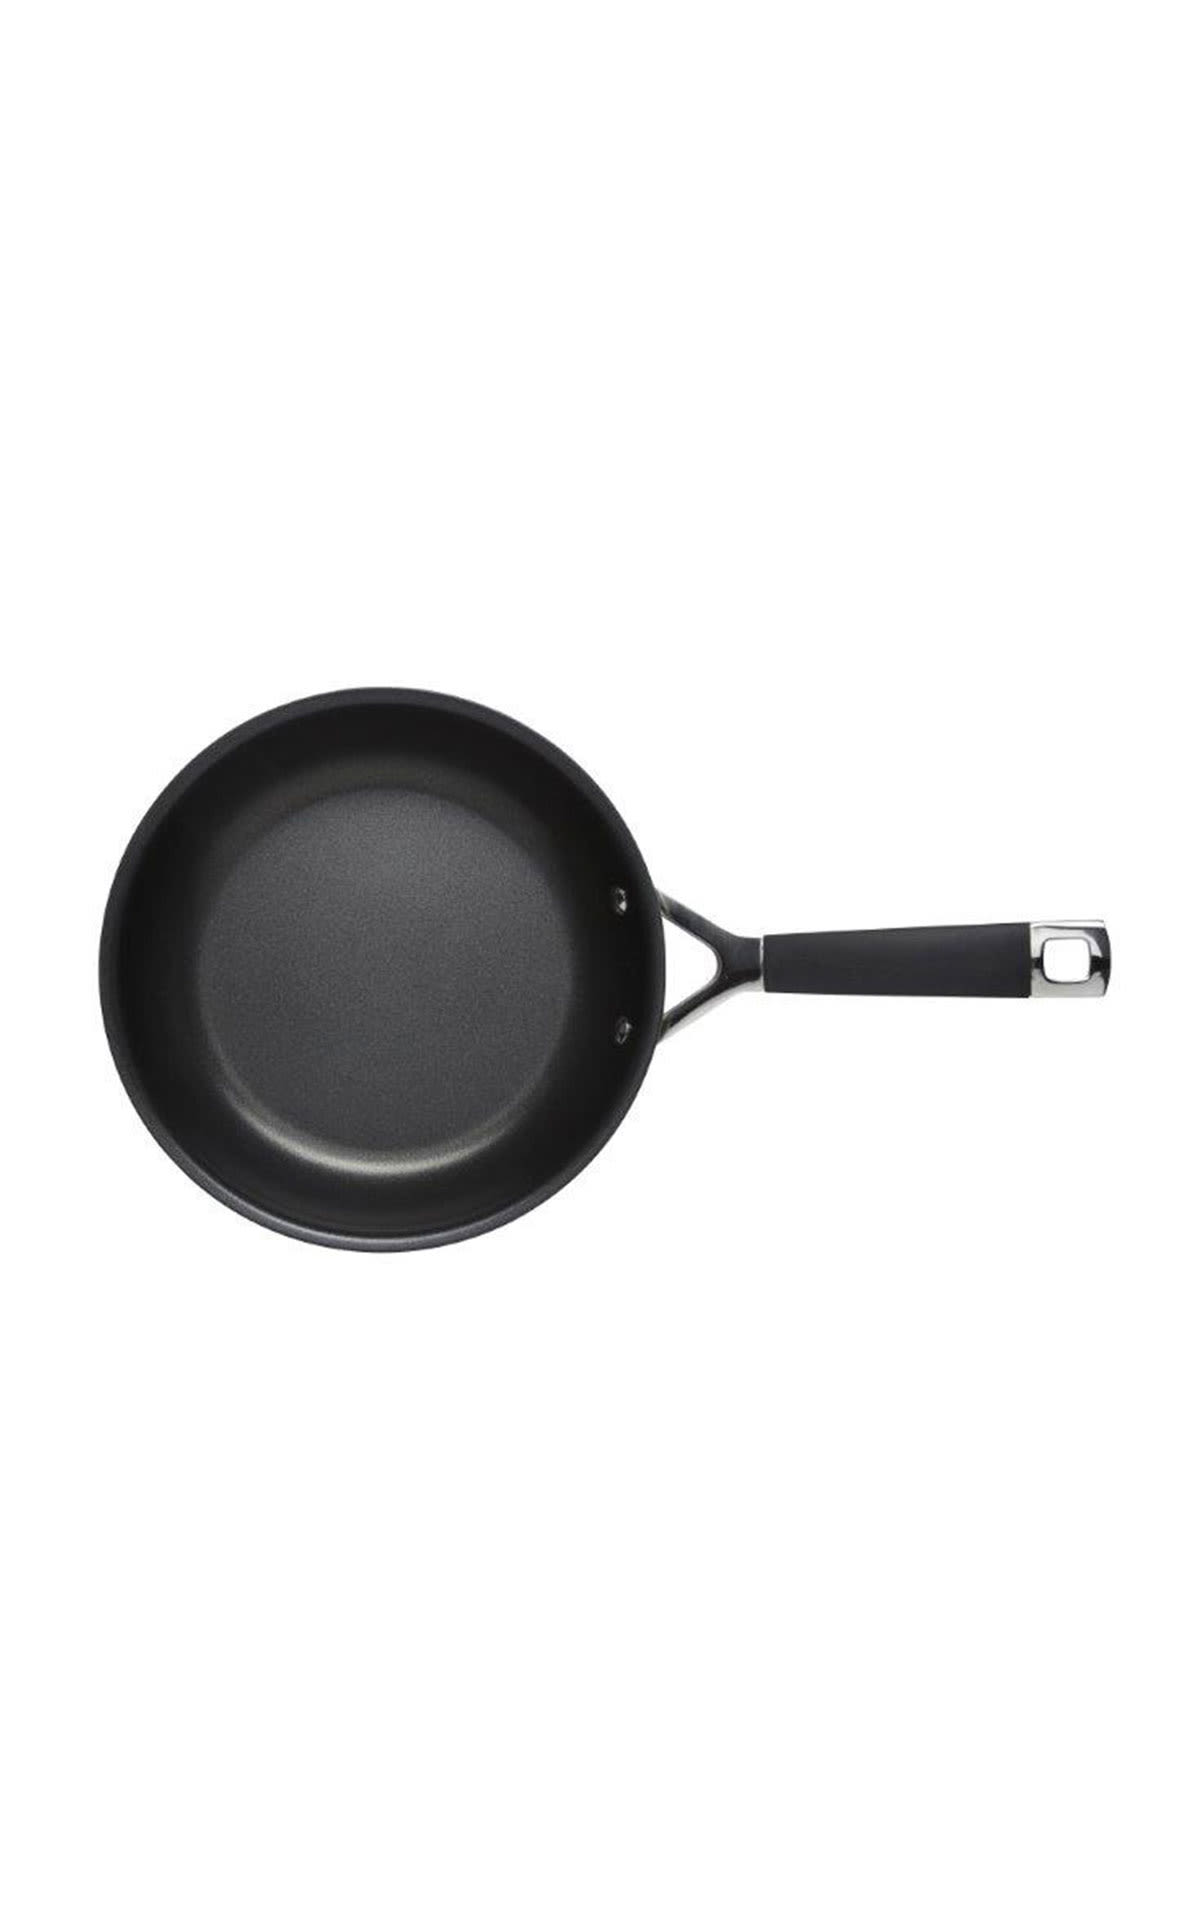 Low frying pan 20 Tns L Le Creuset